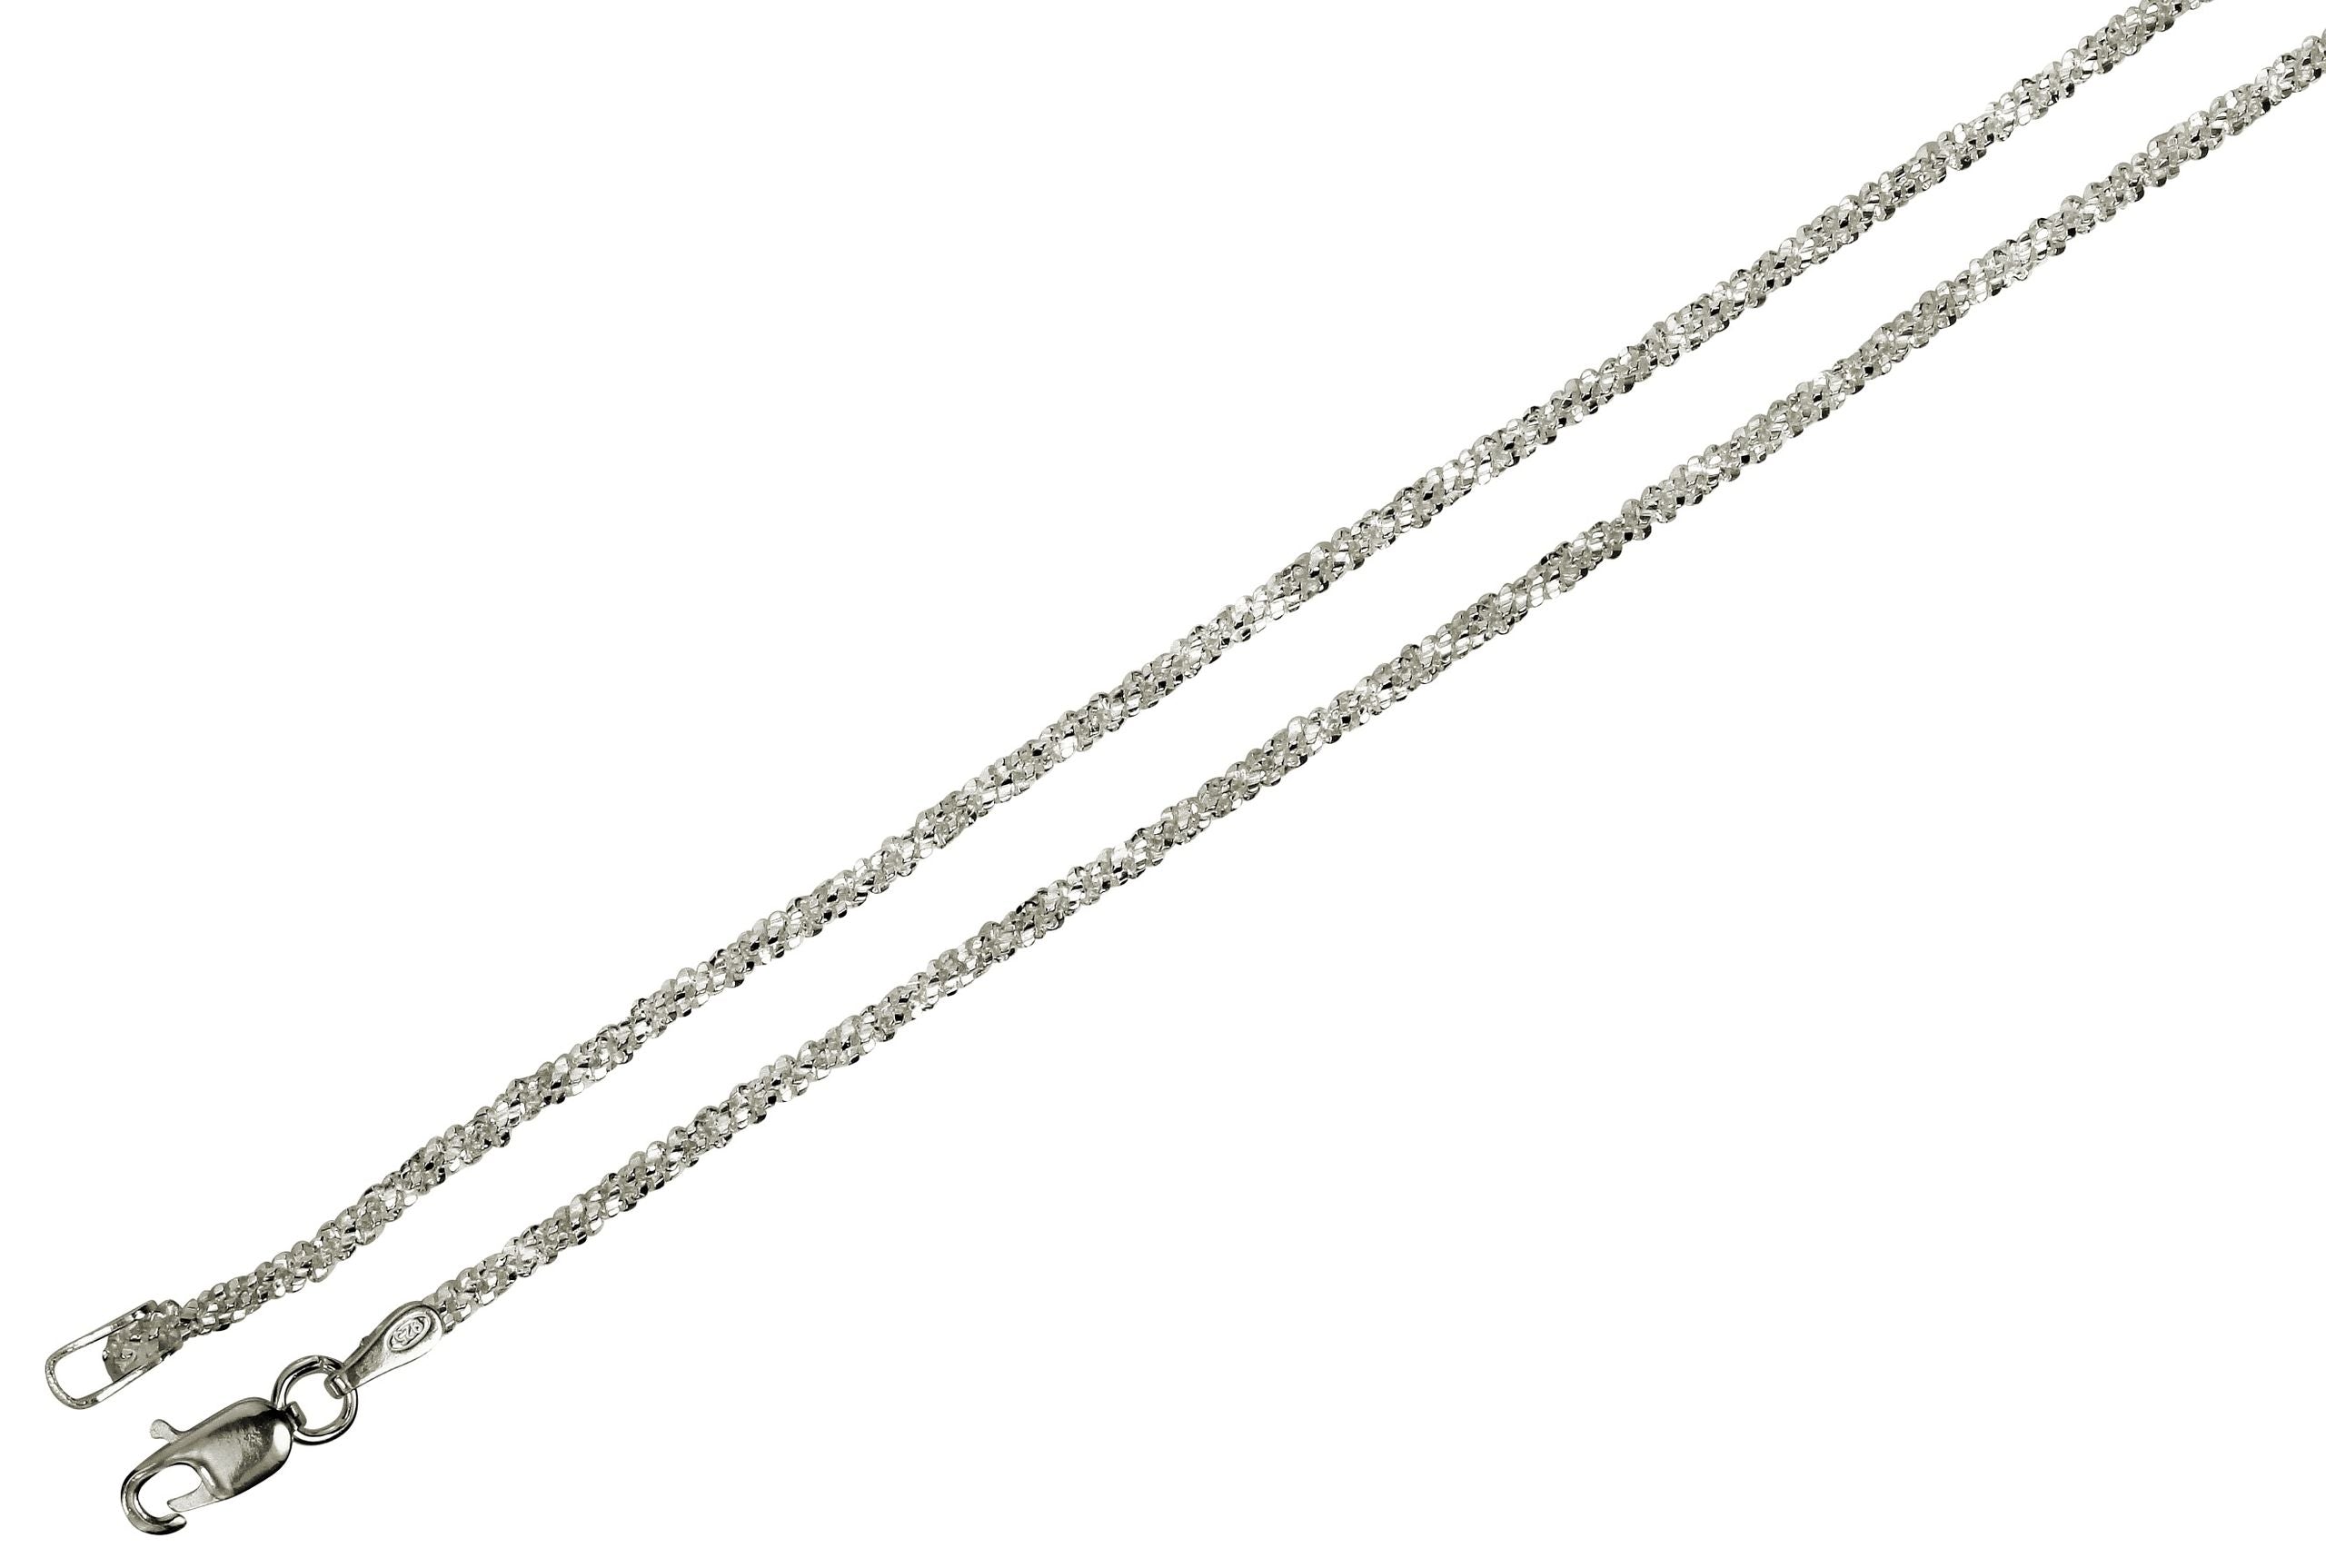 Criss-Cross-Kette aus Silber für Damen mit einem geschmeidigen Geflecht und einer glänzend funkelnden Oberfläche.